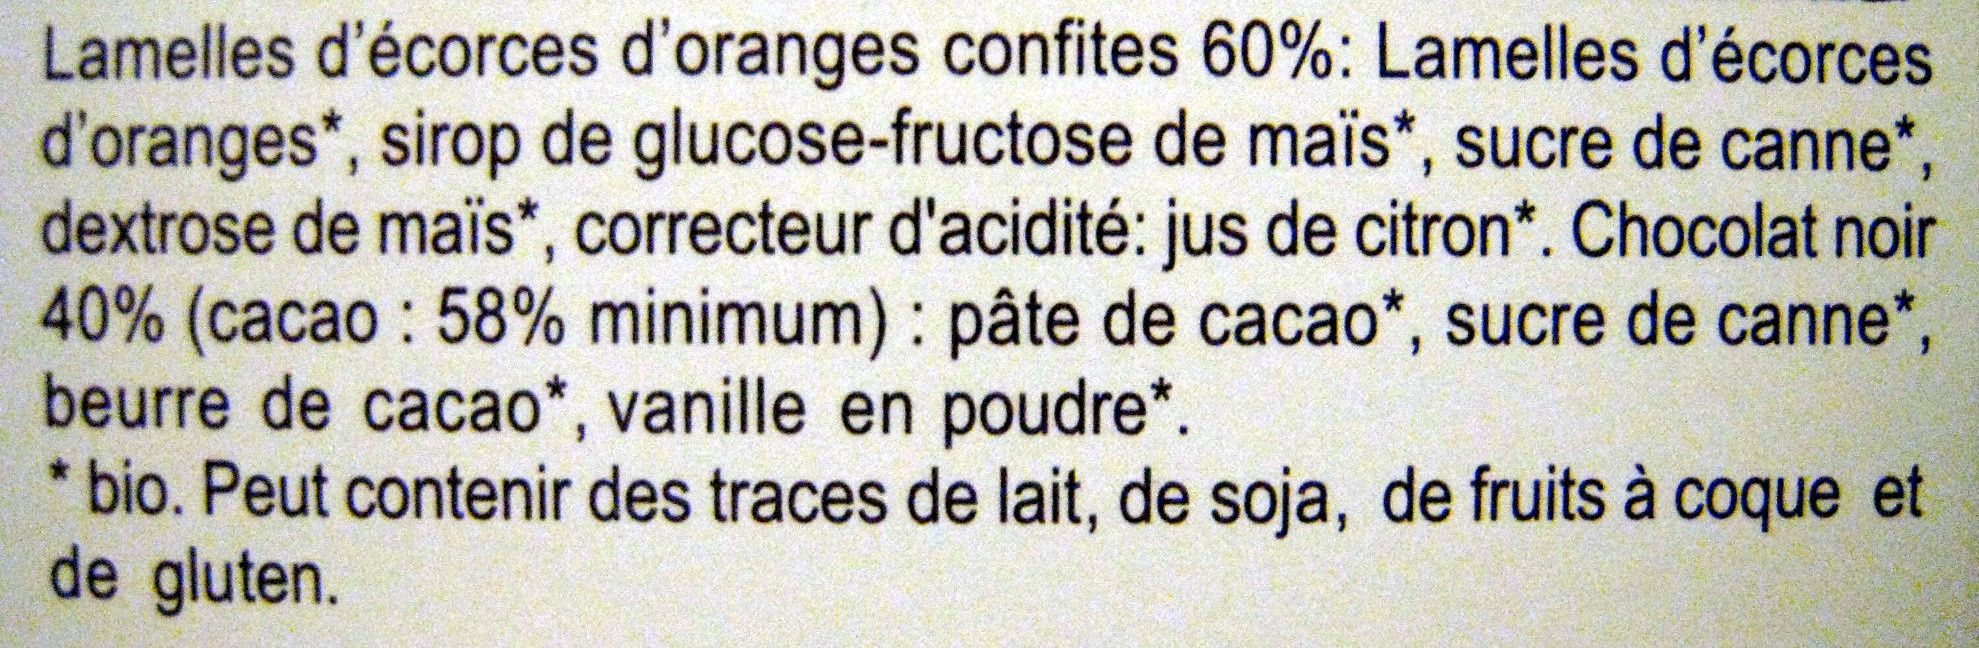 Orangettes - Ingredients - fr